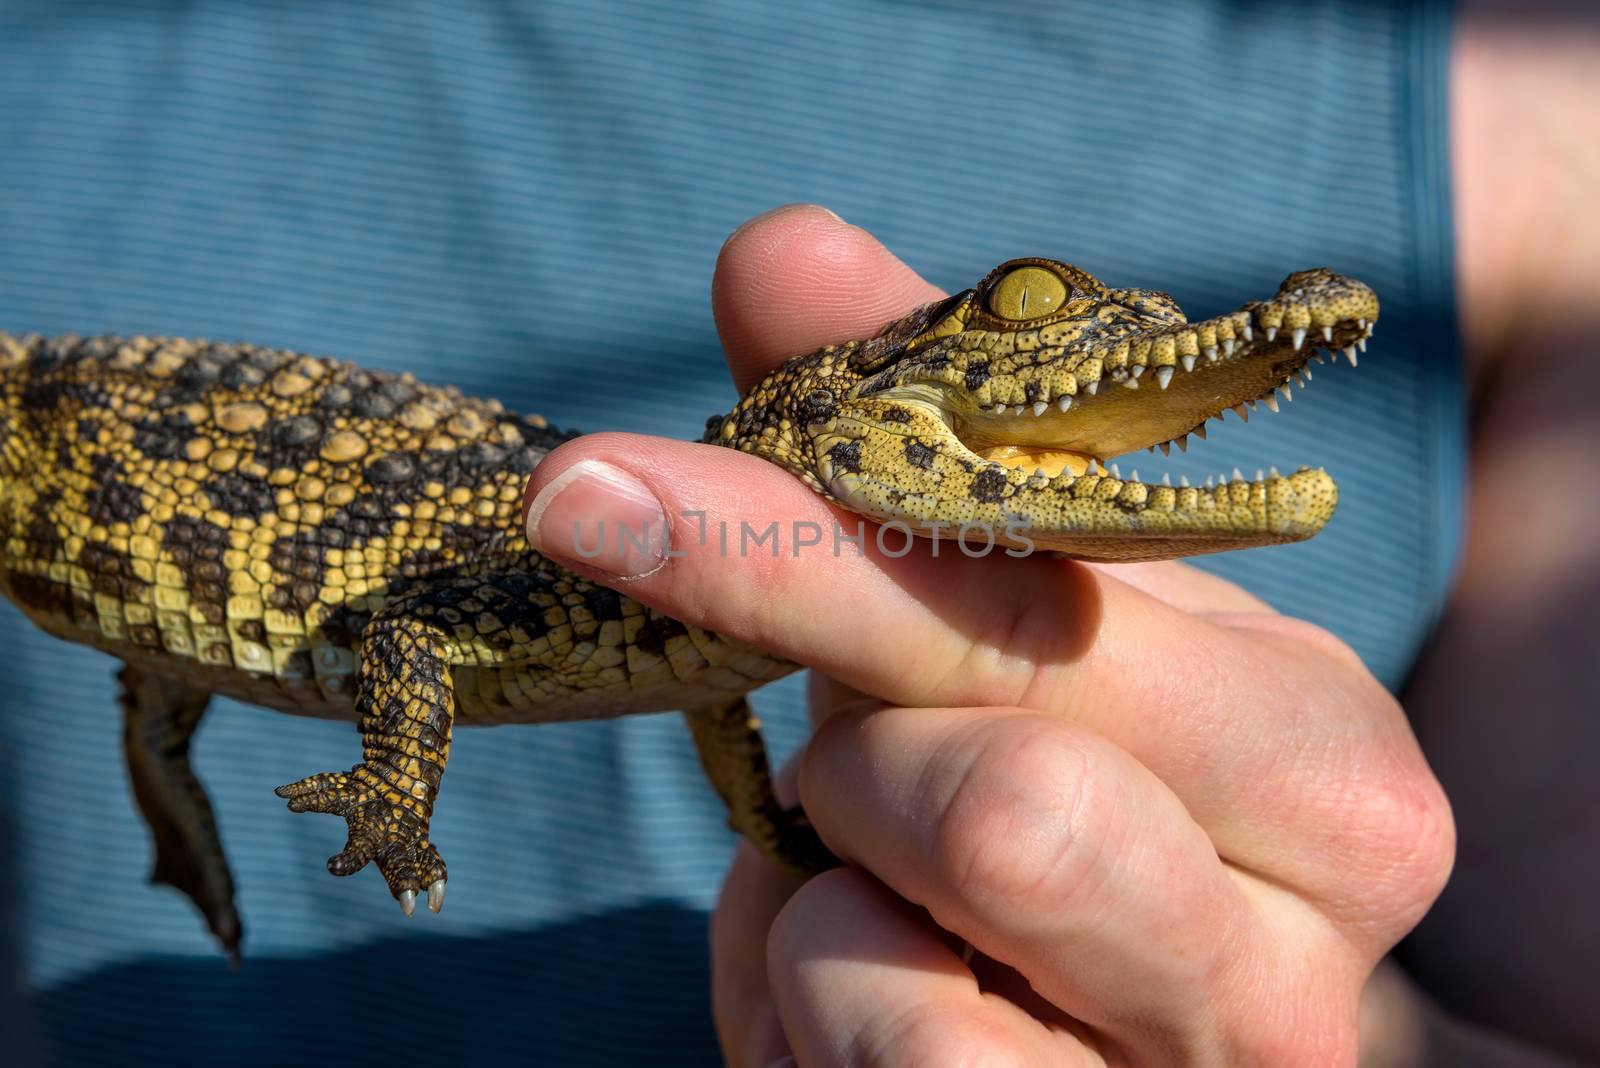 Man holding a baby crocodile by nickfox